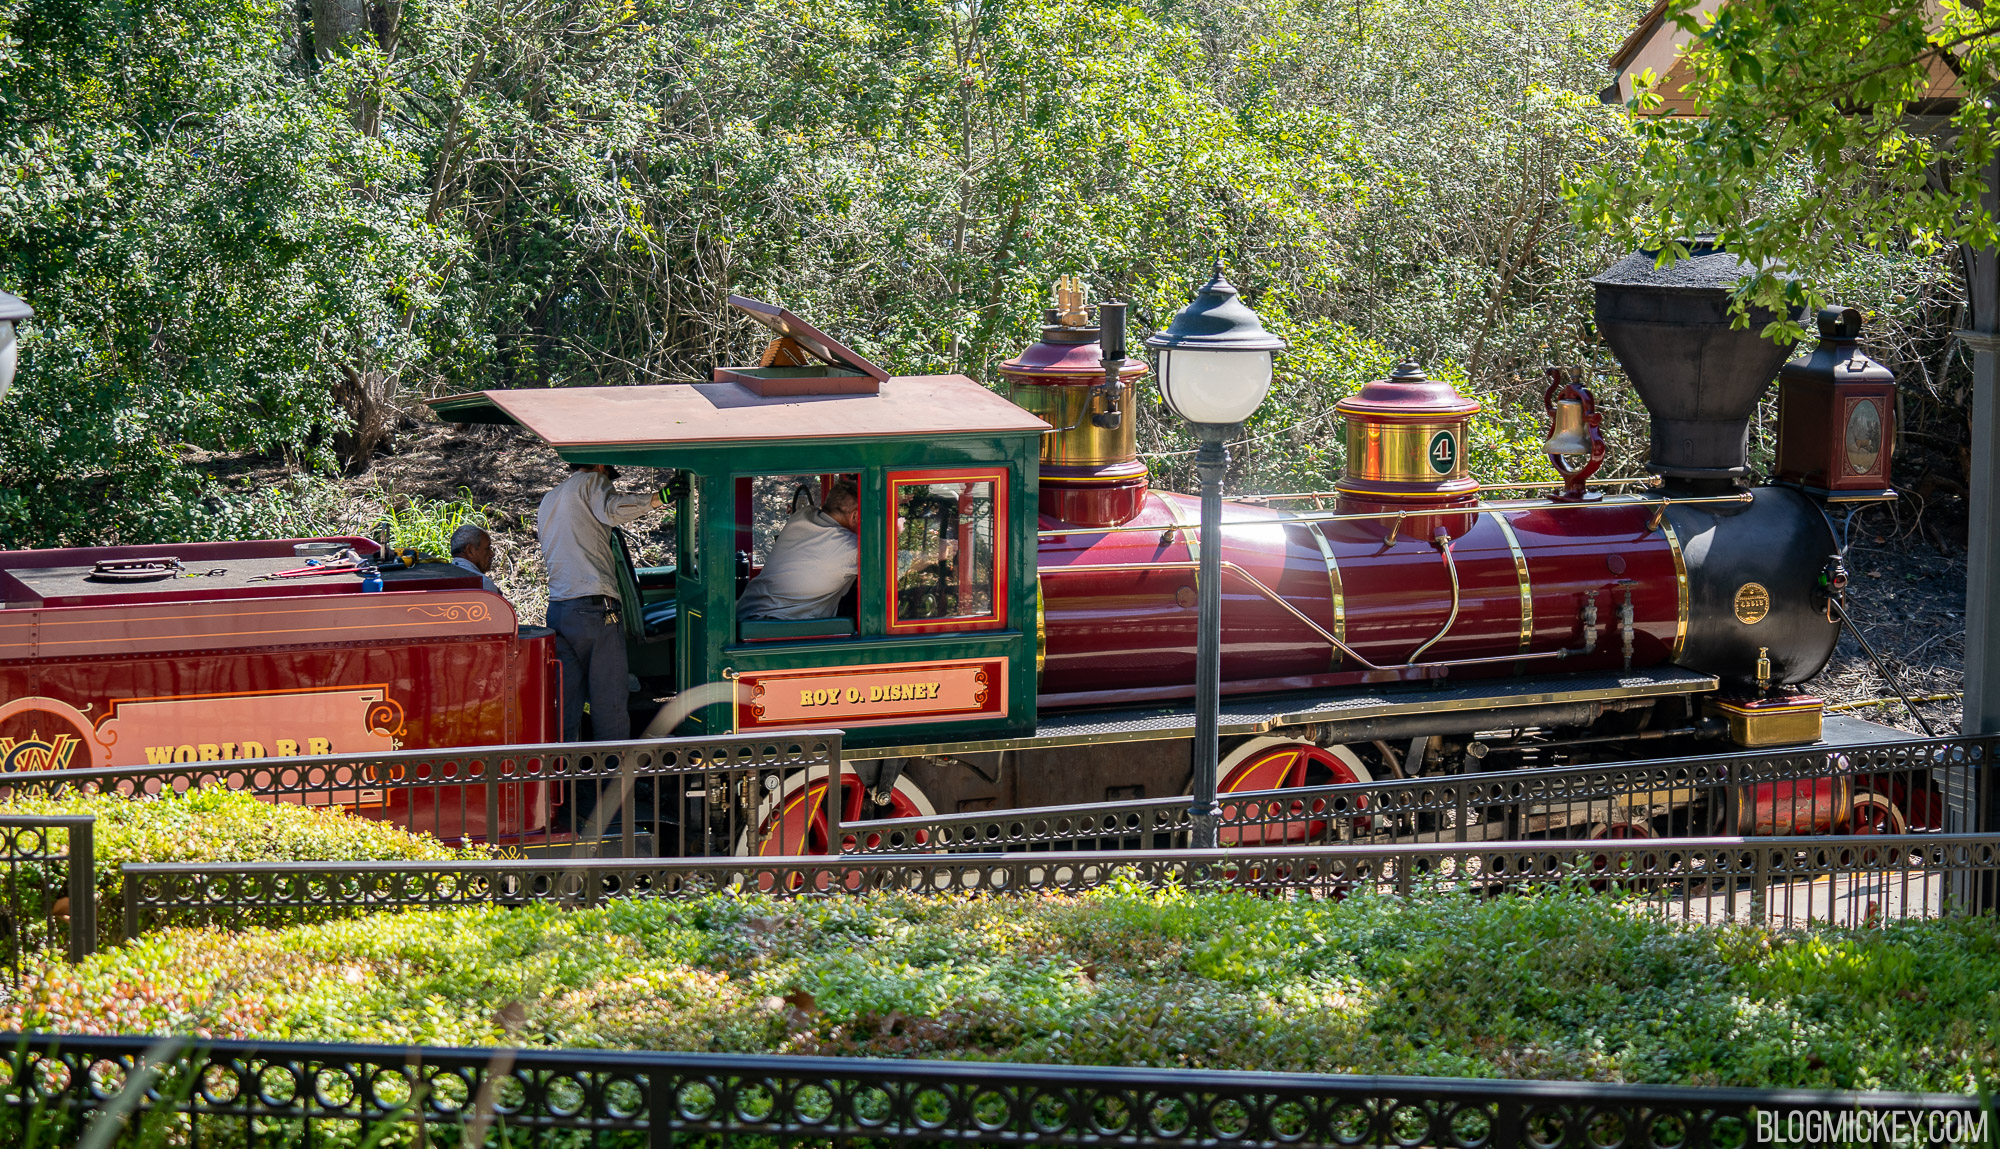 Walt Disney World Railroad Testing at Magic Kingdom